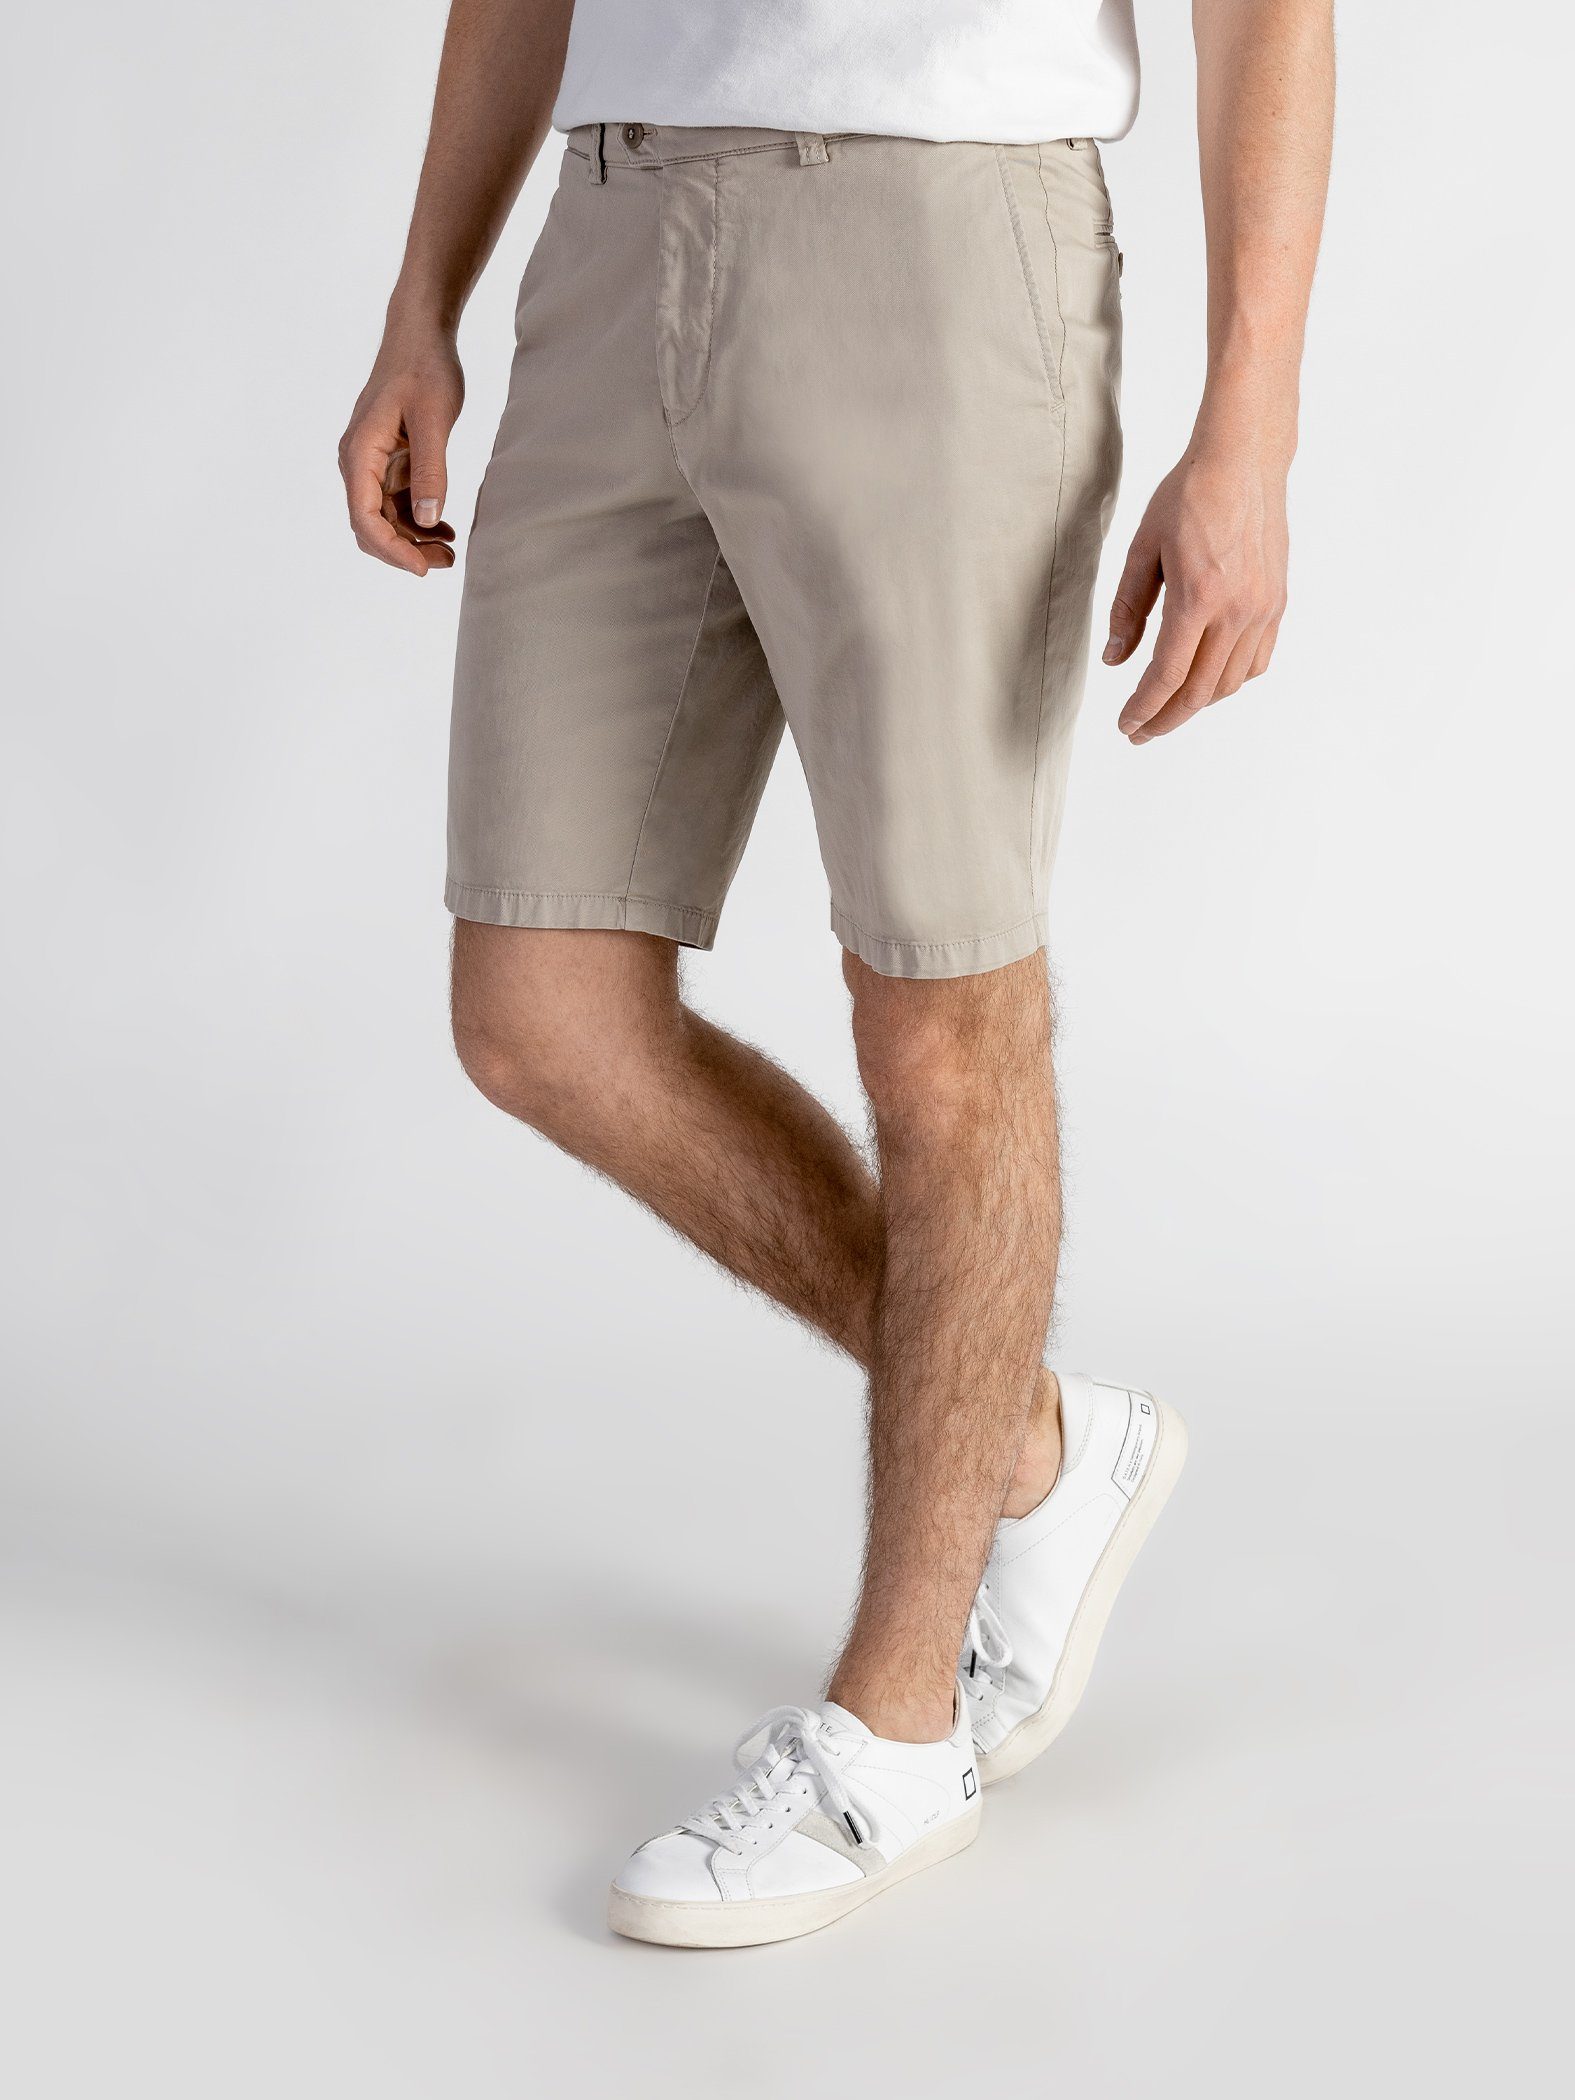 TwoMates Shorts Shorts mit elastischem sandbeige Bund, GOTS-zertifiziert Farbauswahl